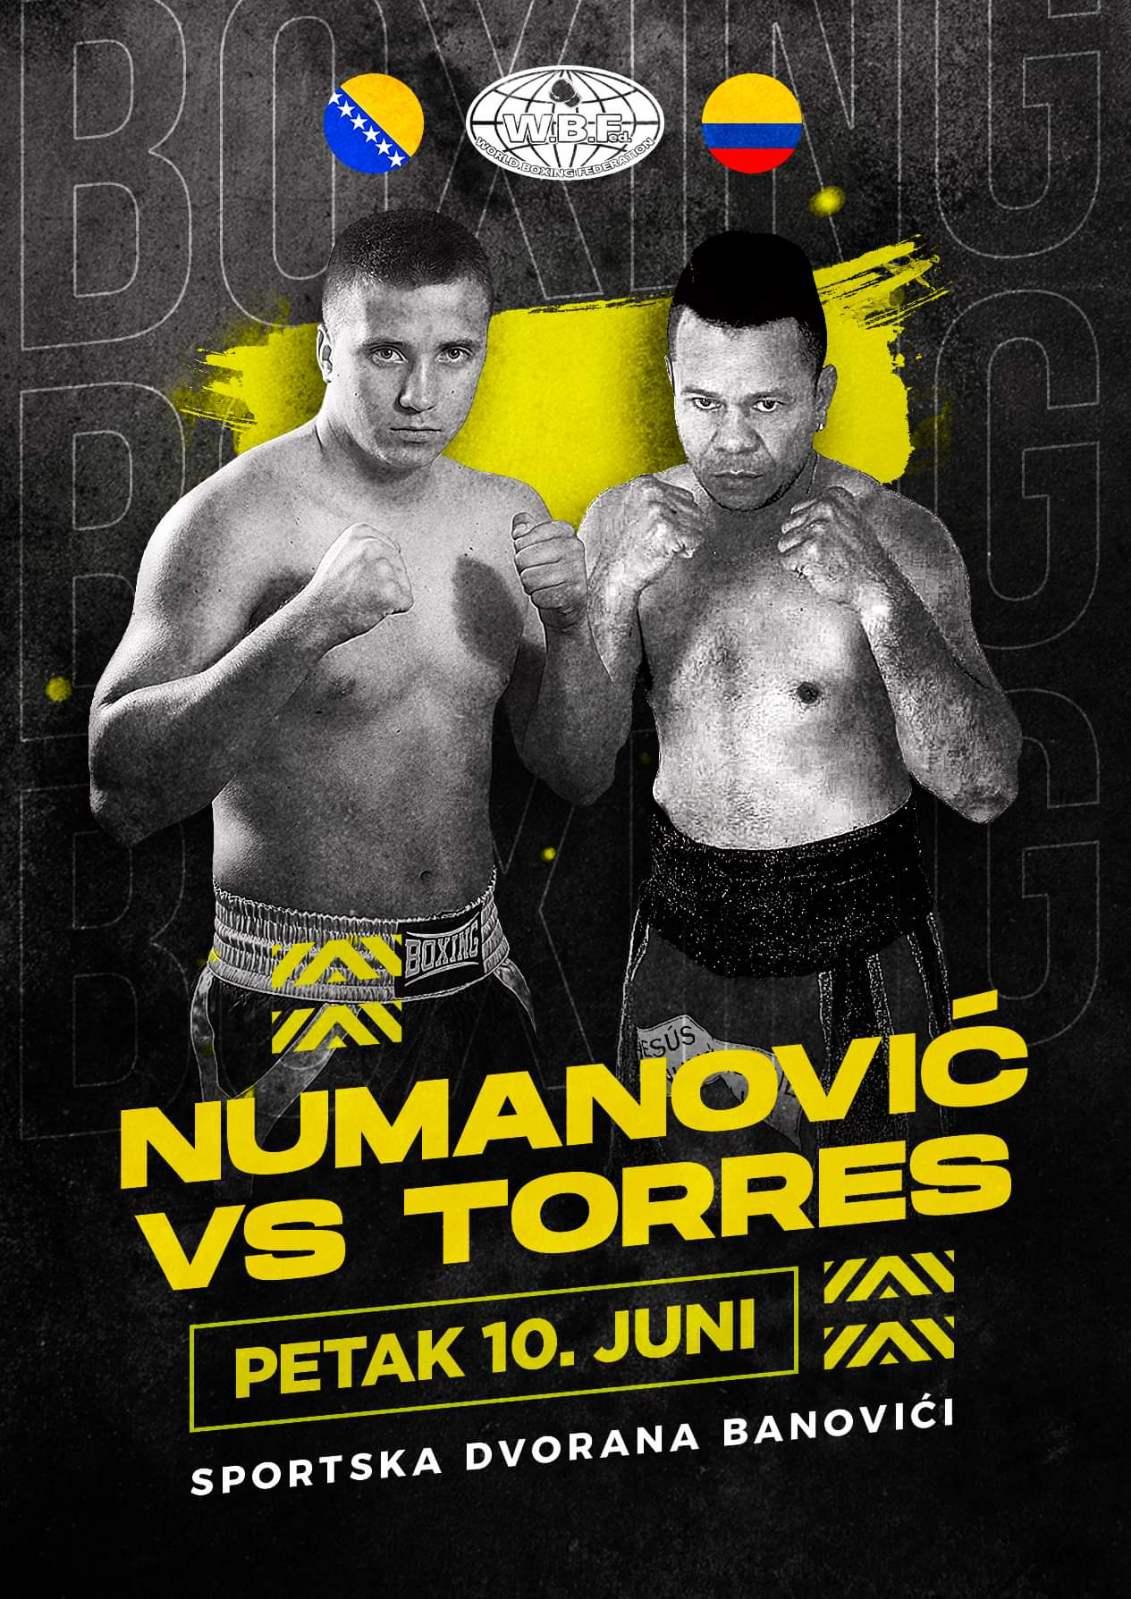 U duelu Numanovića i Toresa  očekuje se dobar boks - Avaz